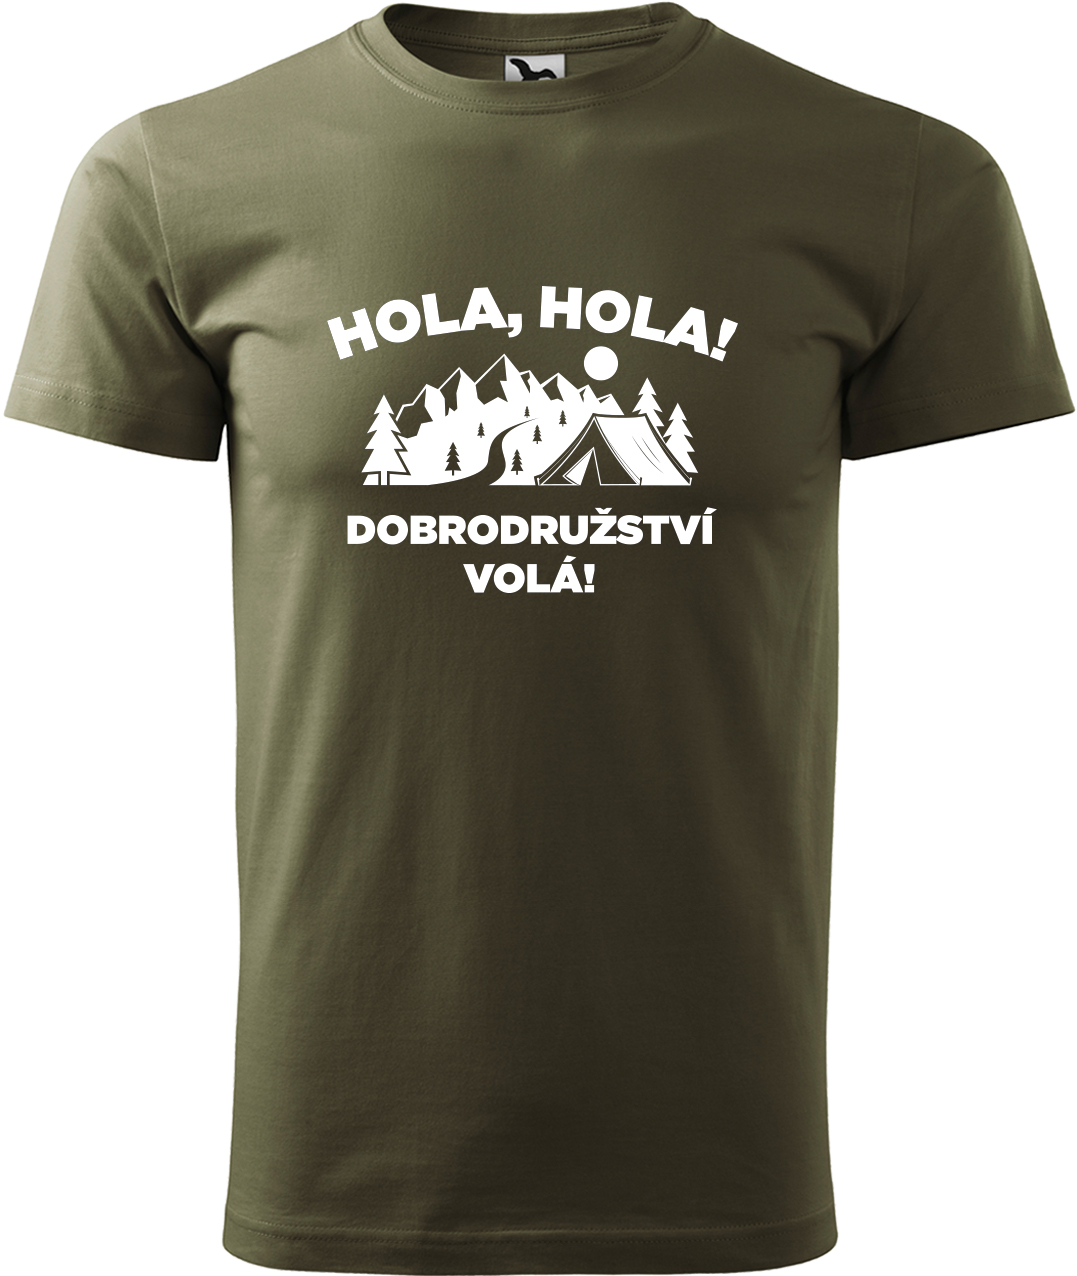 Pánské cestovatelské tričko - Hola hola! Dobrodružství volá! Velikost: S, Barva: Military (69), Střih: pánský